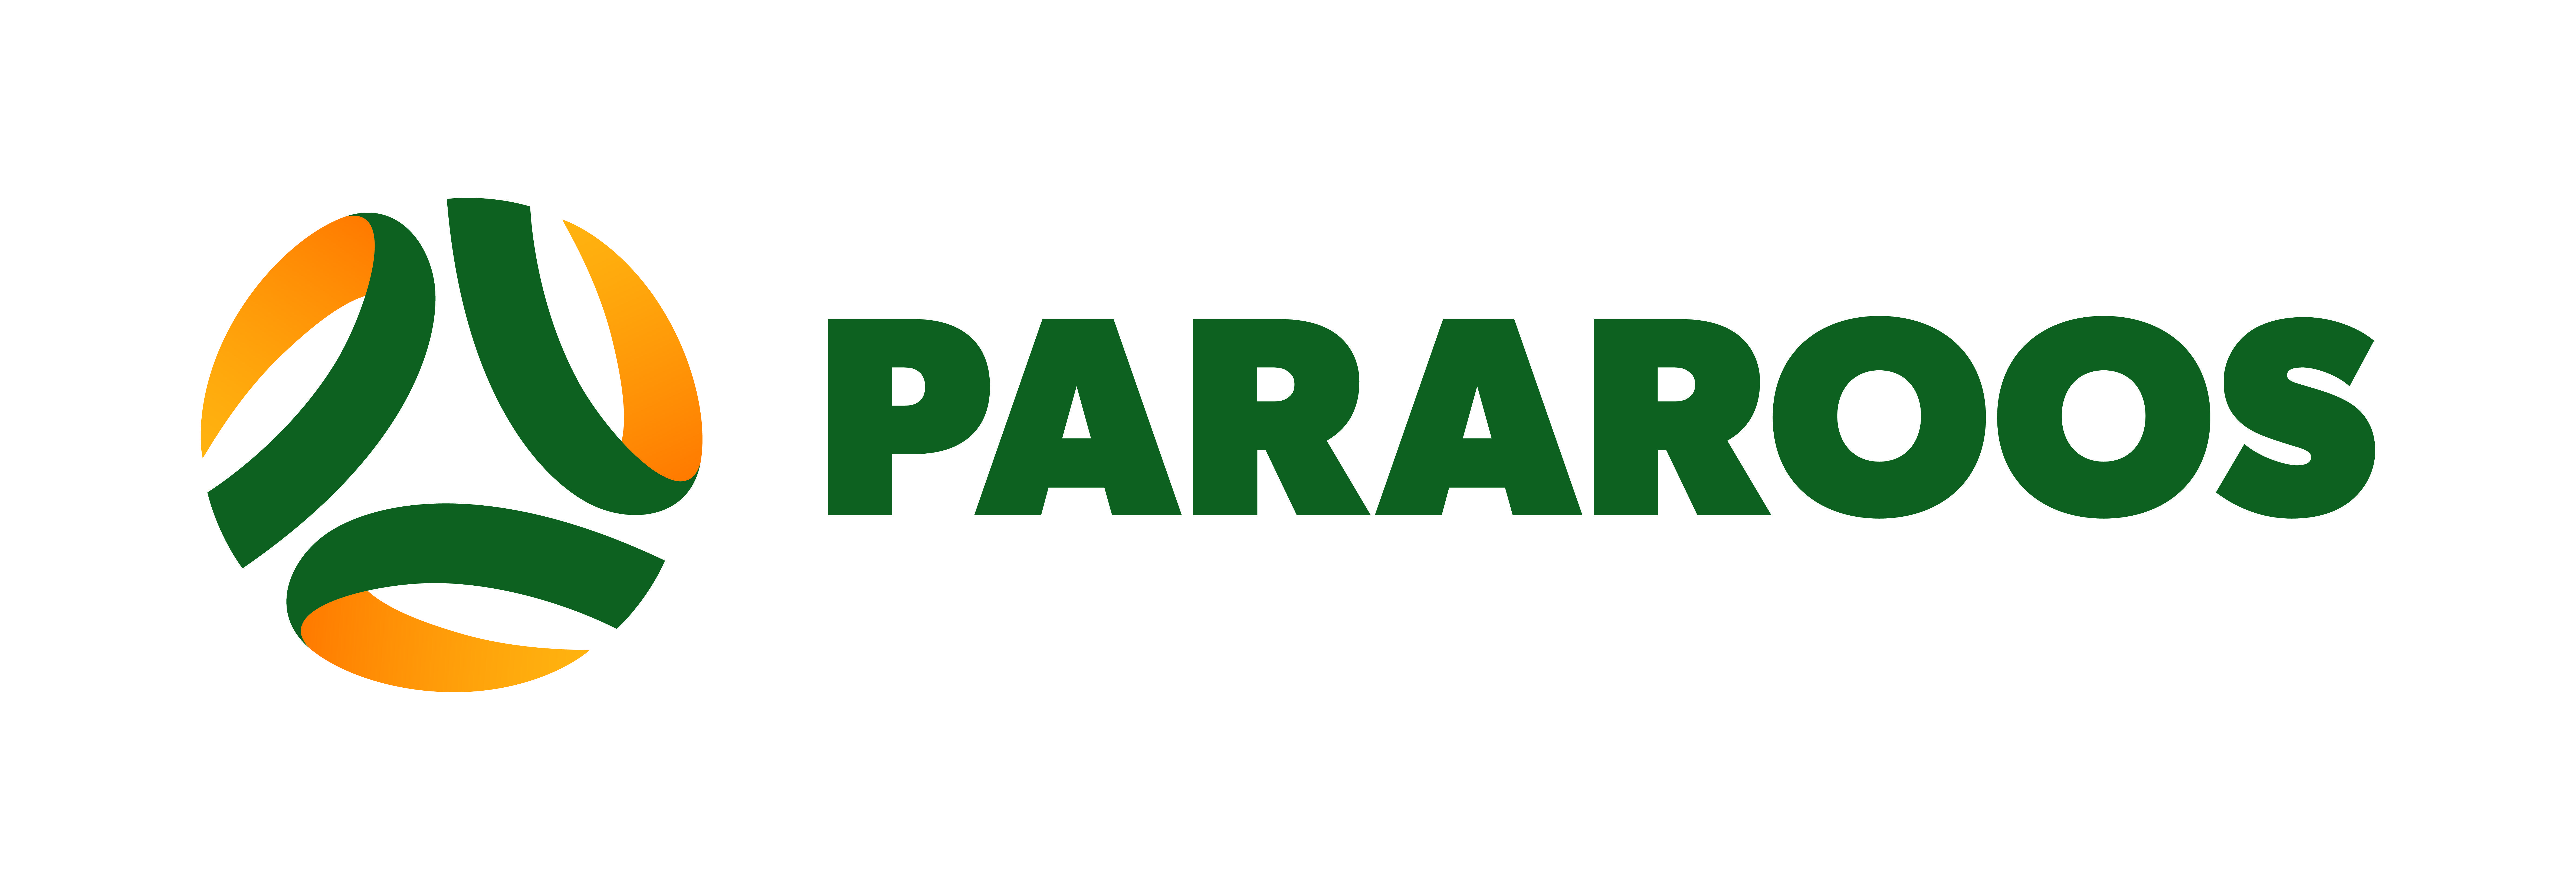 Socceroos Logo - Pararoos get fresh look ahead of Spain quest